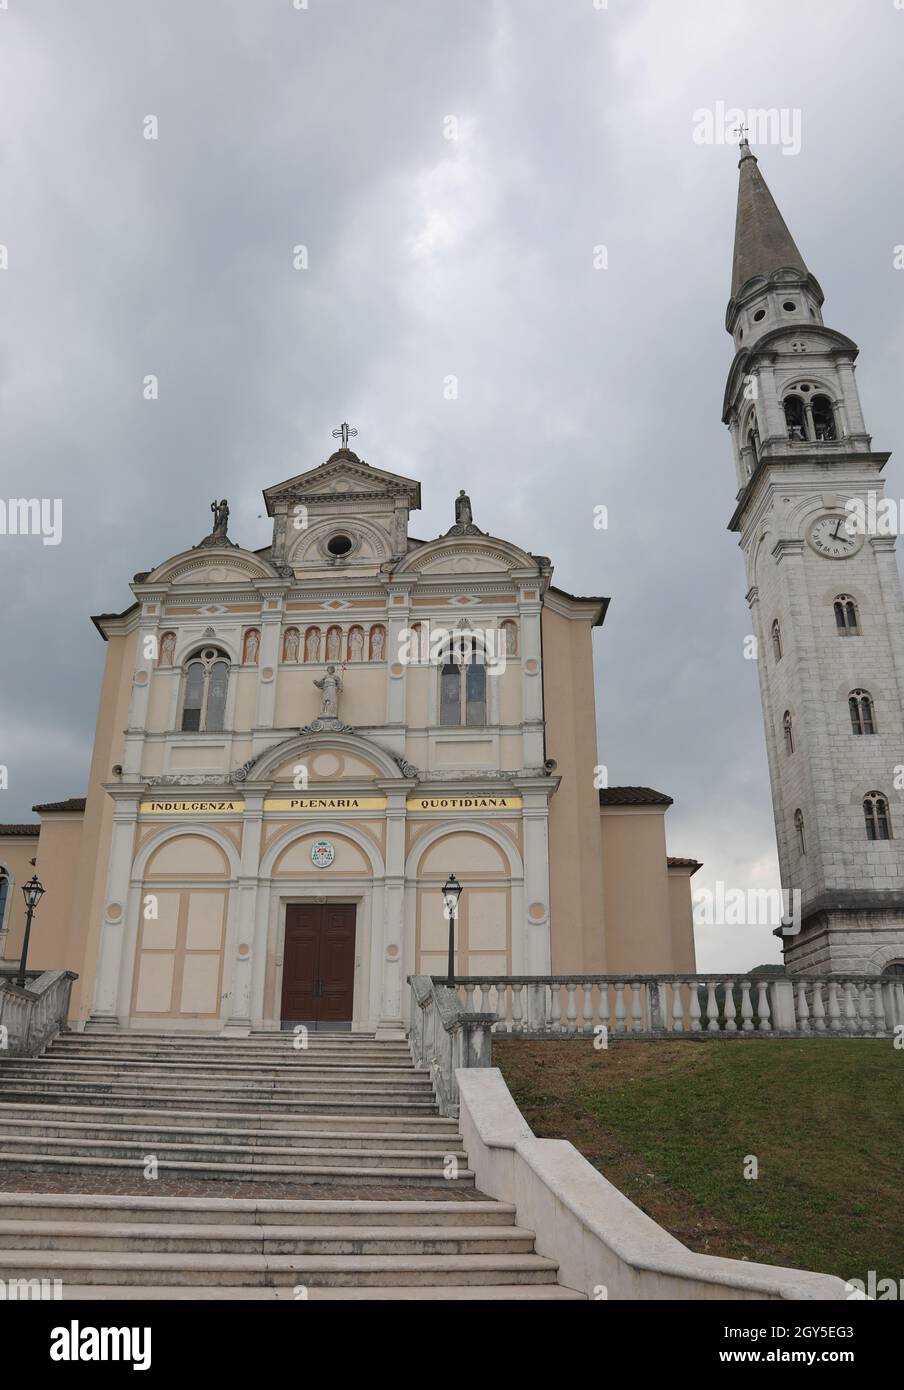 Église dans la ville appelée MONTE DI MALO près de Vicenza ville dans le nord de l'Italie et texte qui signifie INDULGENZAPLENARIAQUOTIDIANA en langue italienne Banque D'Images